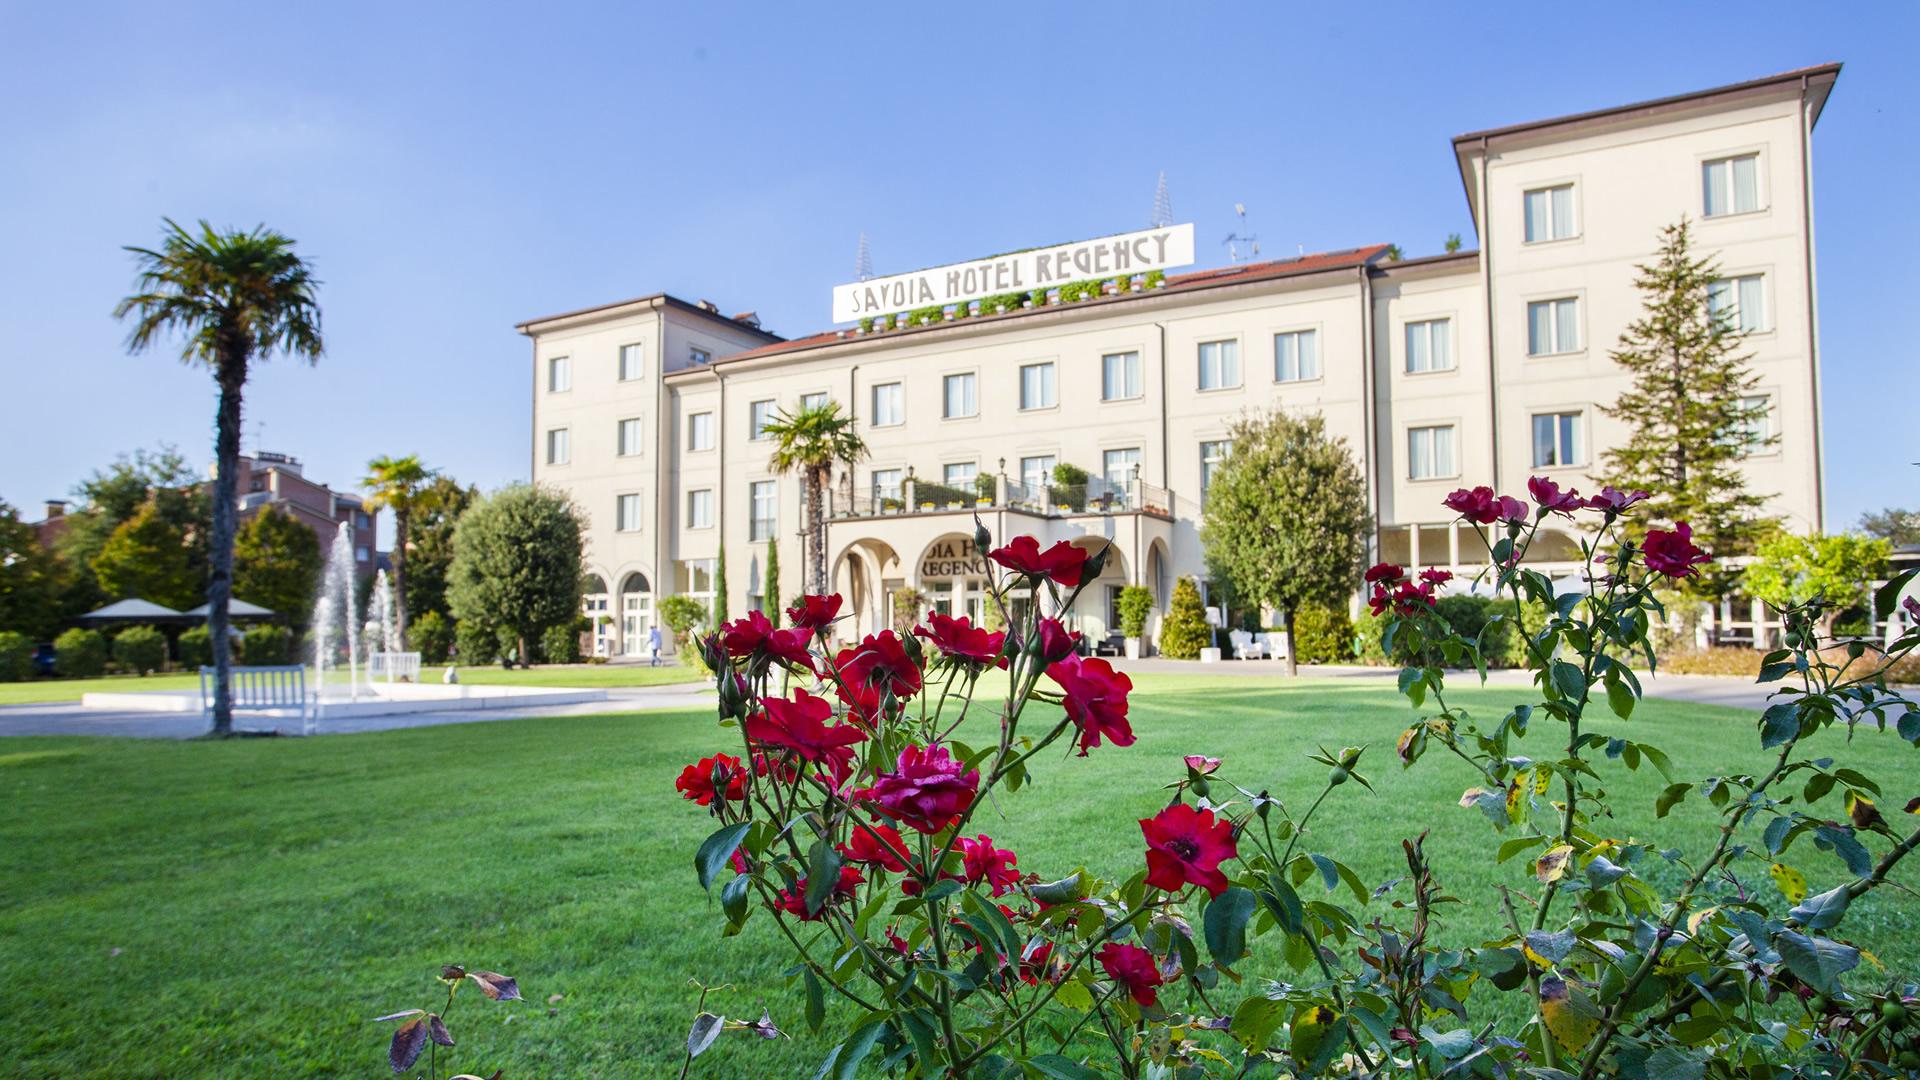 Hotel elegante con giardino curato e fontane, circondato da fiori e palme.